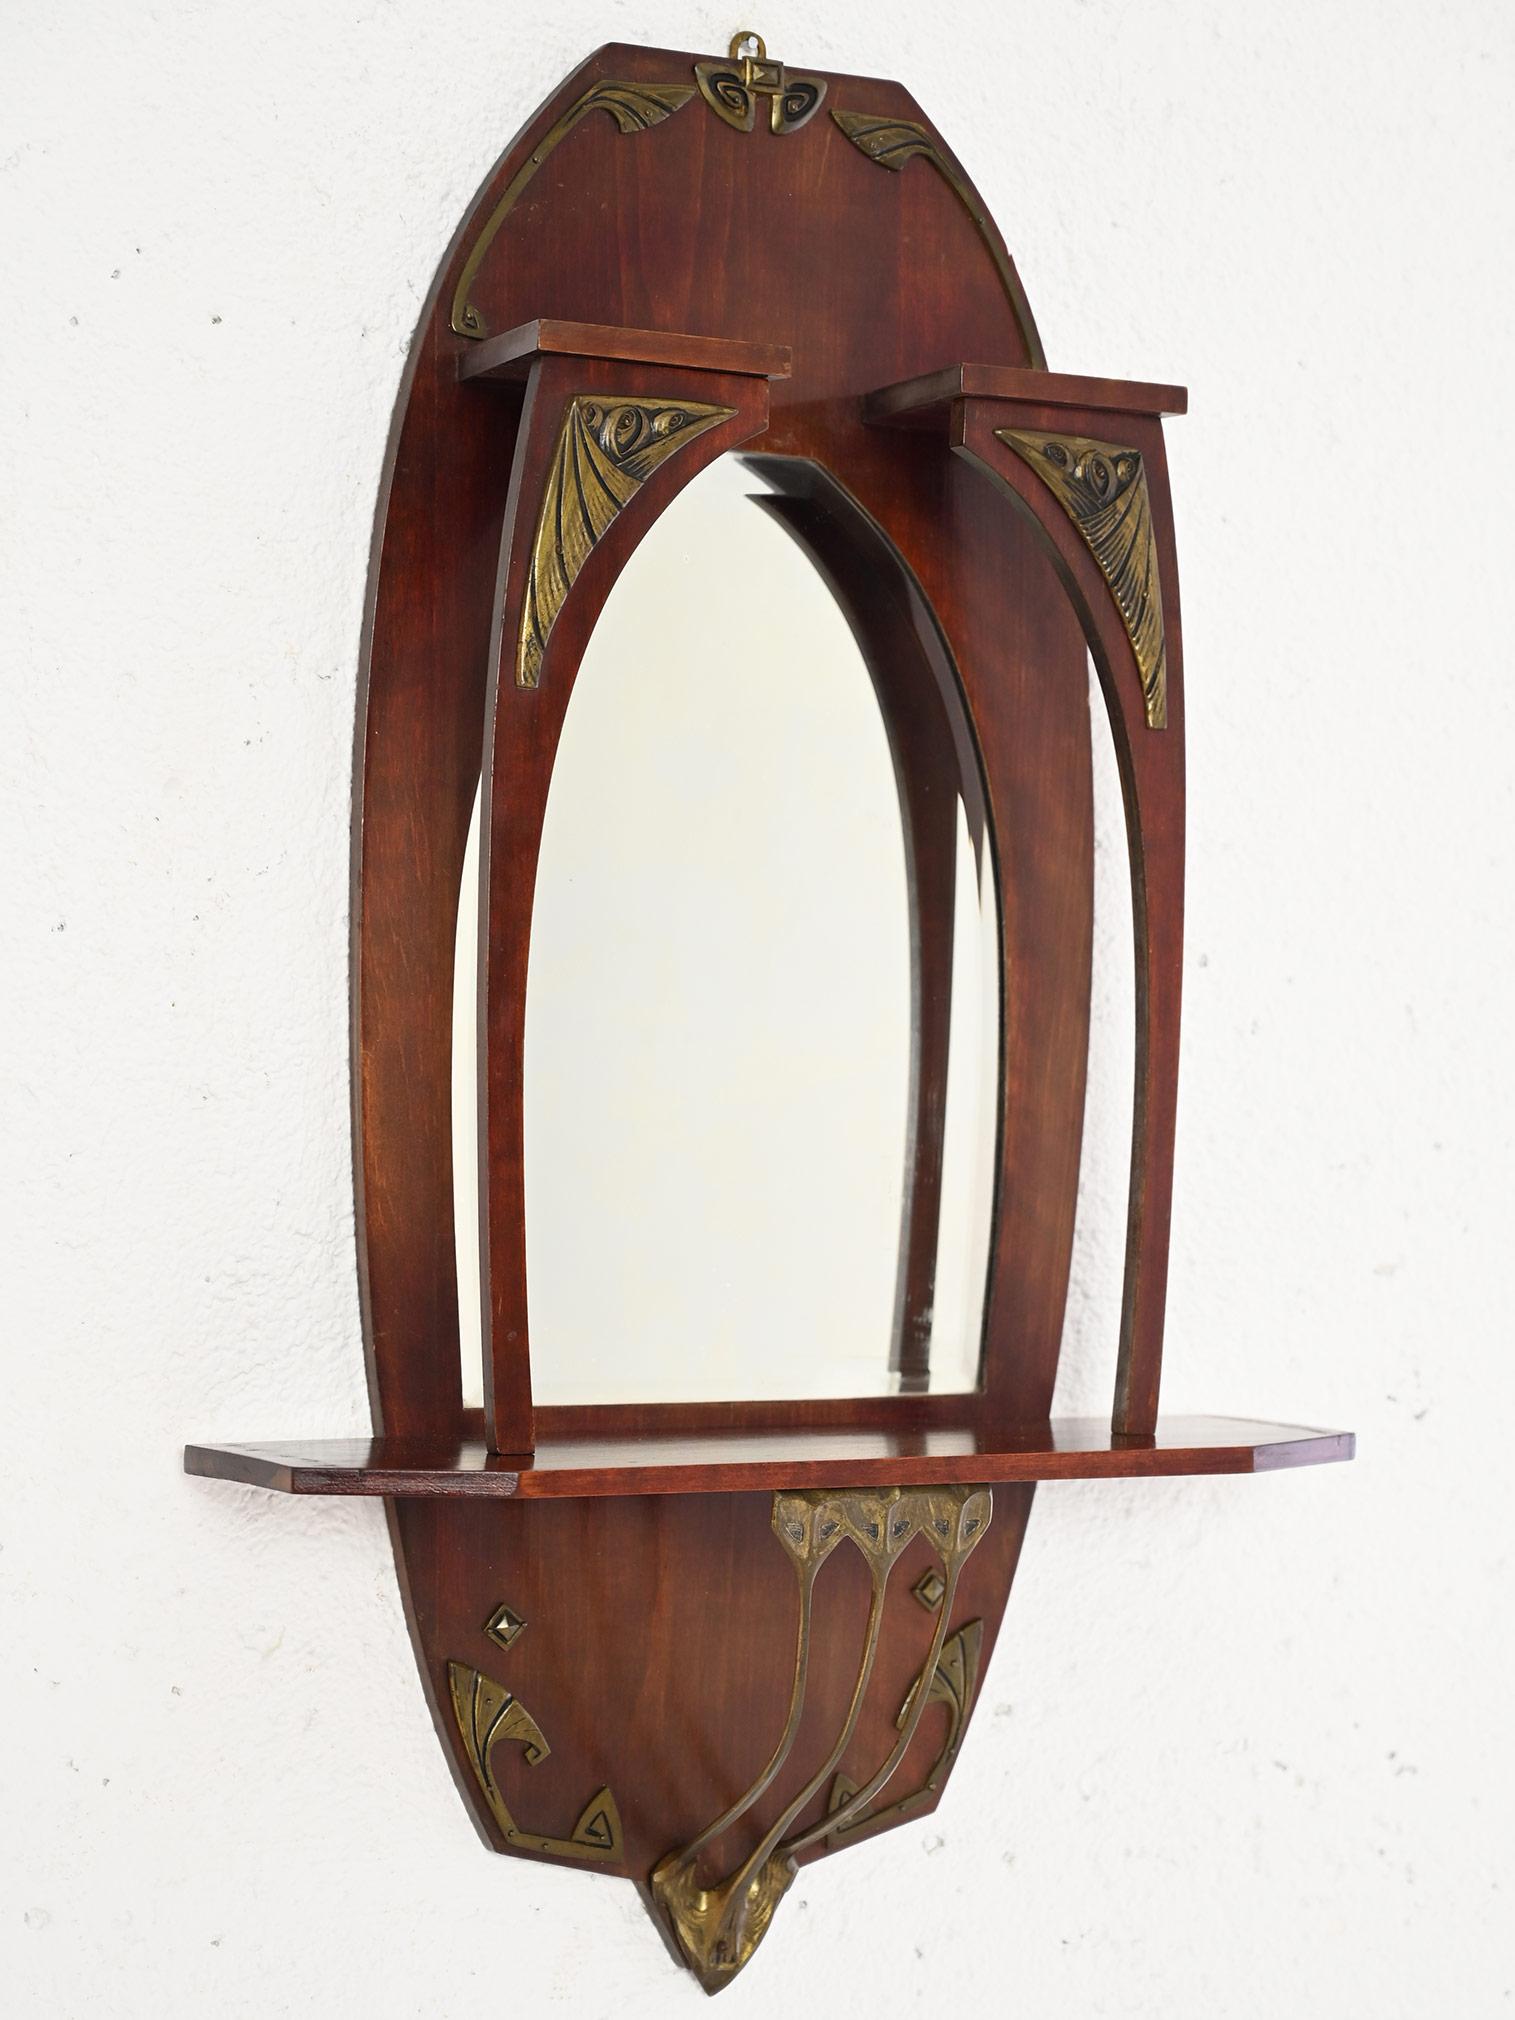 Eleganter skandinavischer Vintage-Spiegel.

Ein Möbelstück mit klassischem und raffiniertem Geschmack, das sich durch die besondere Rahmenstruktur auszeichnet, die ein kleines Regal und mehrere Messingverzierungen im Jugendstil aufweist.
Dank seiner